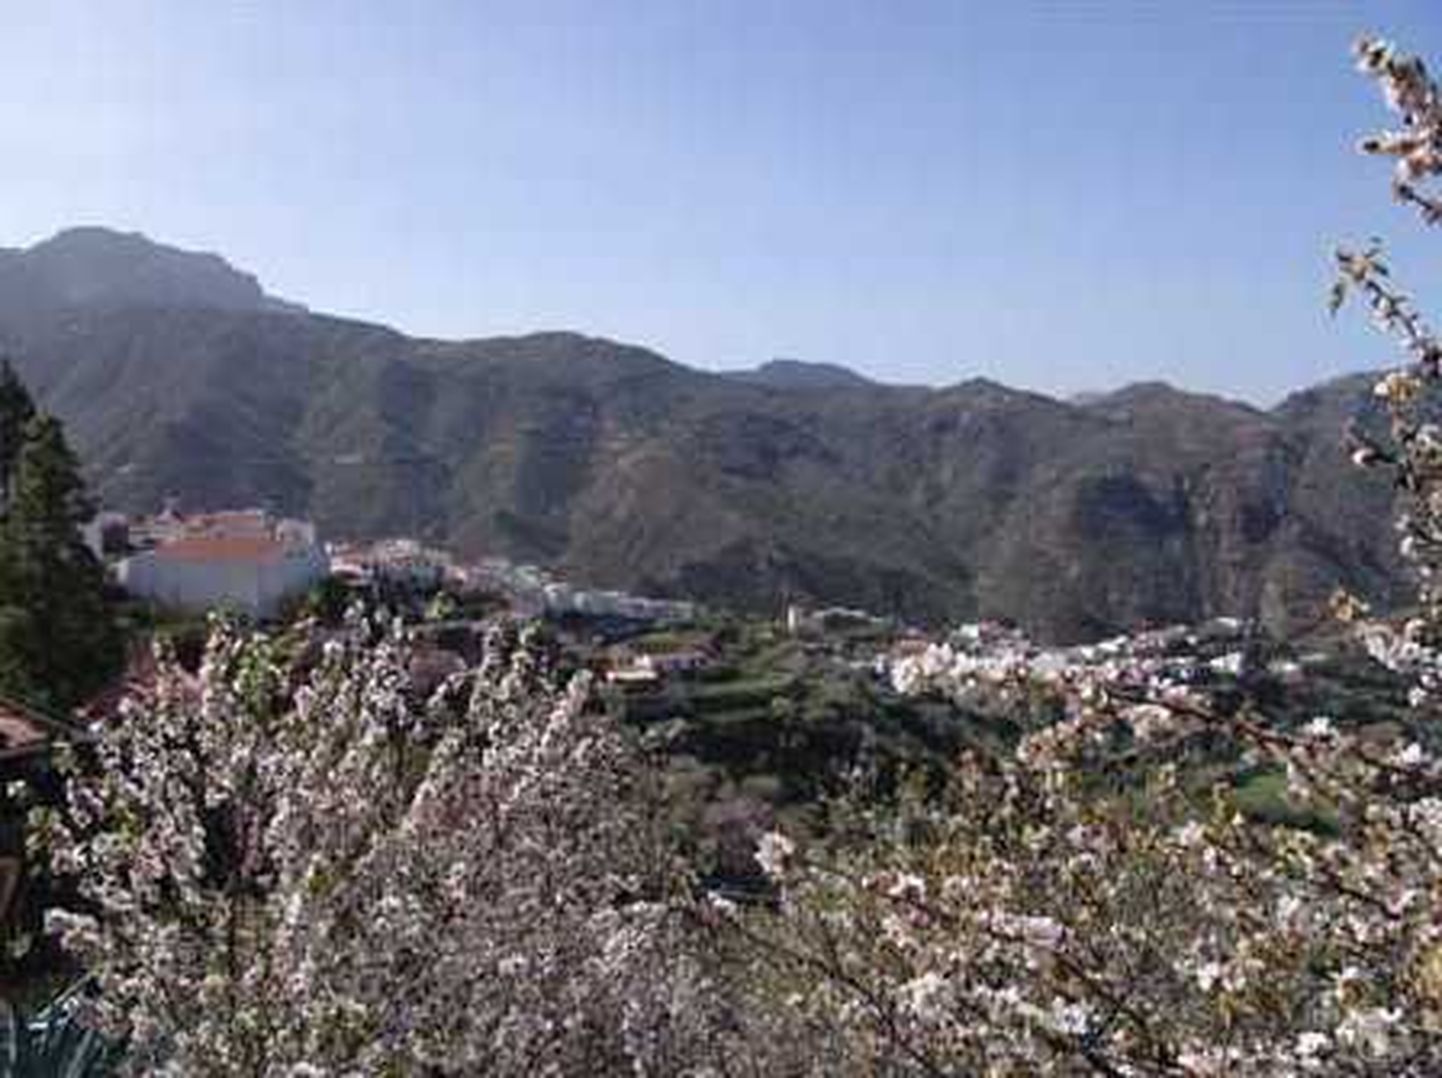 Gran Canarial Tejedas tähistatakse 31. jaanuaril ja 1. veebruaril mandlipuude õitsemist ja kevade saabimist. Linnake pakub rikkalikku kultuuriprogrammi, kohalikke hõrgutisi ja käsitööd.